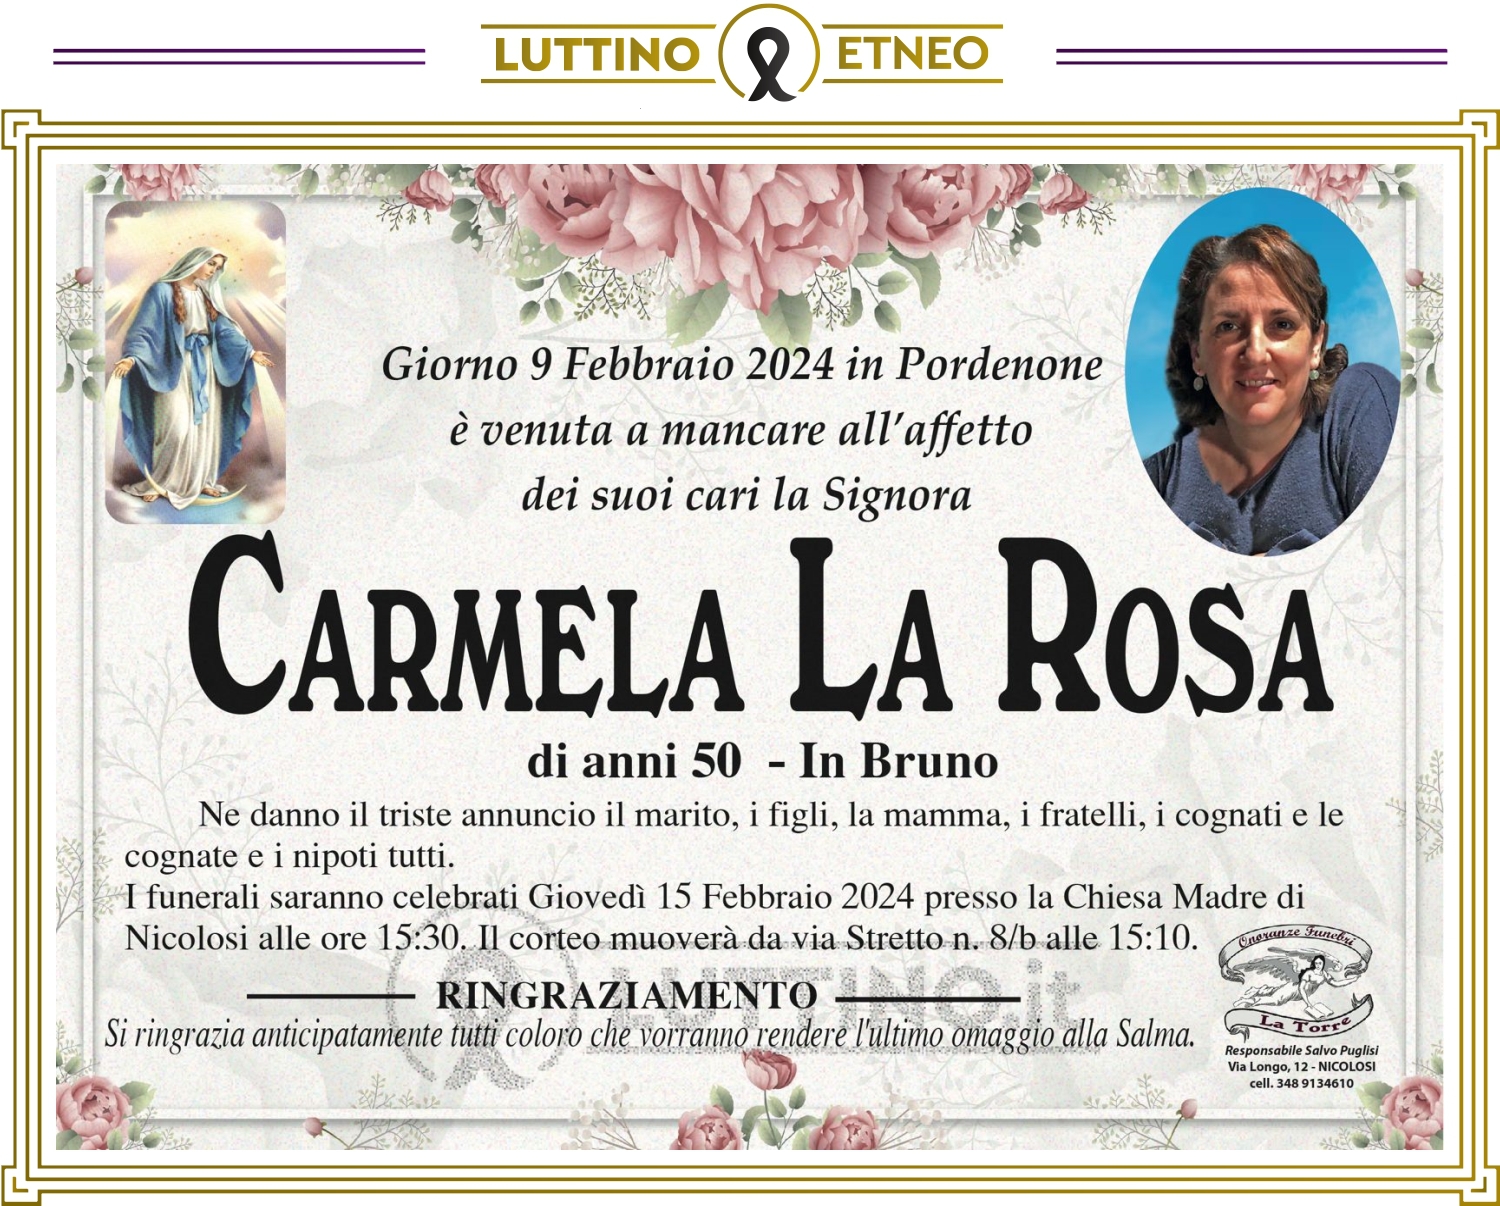 Carmela La Rosa